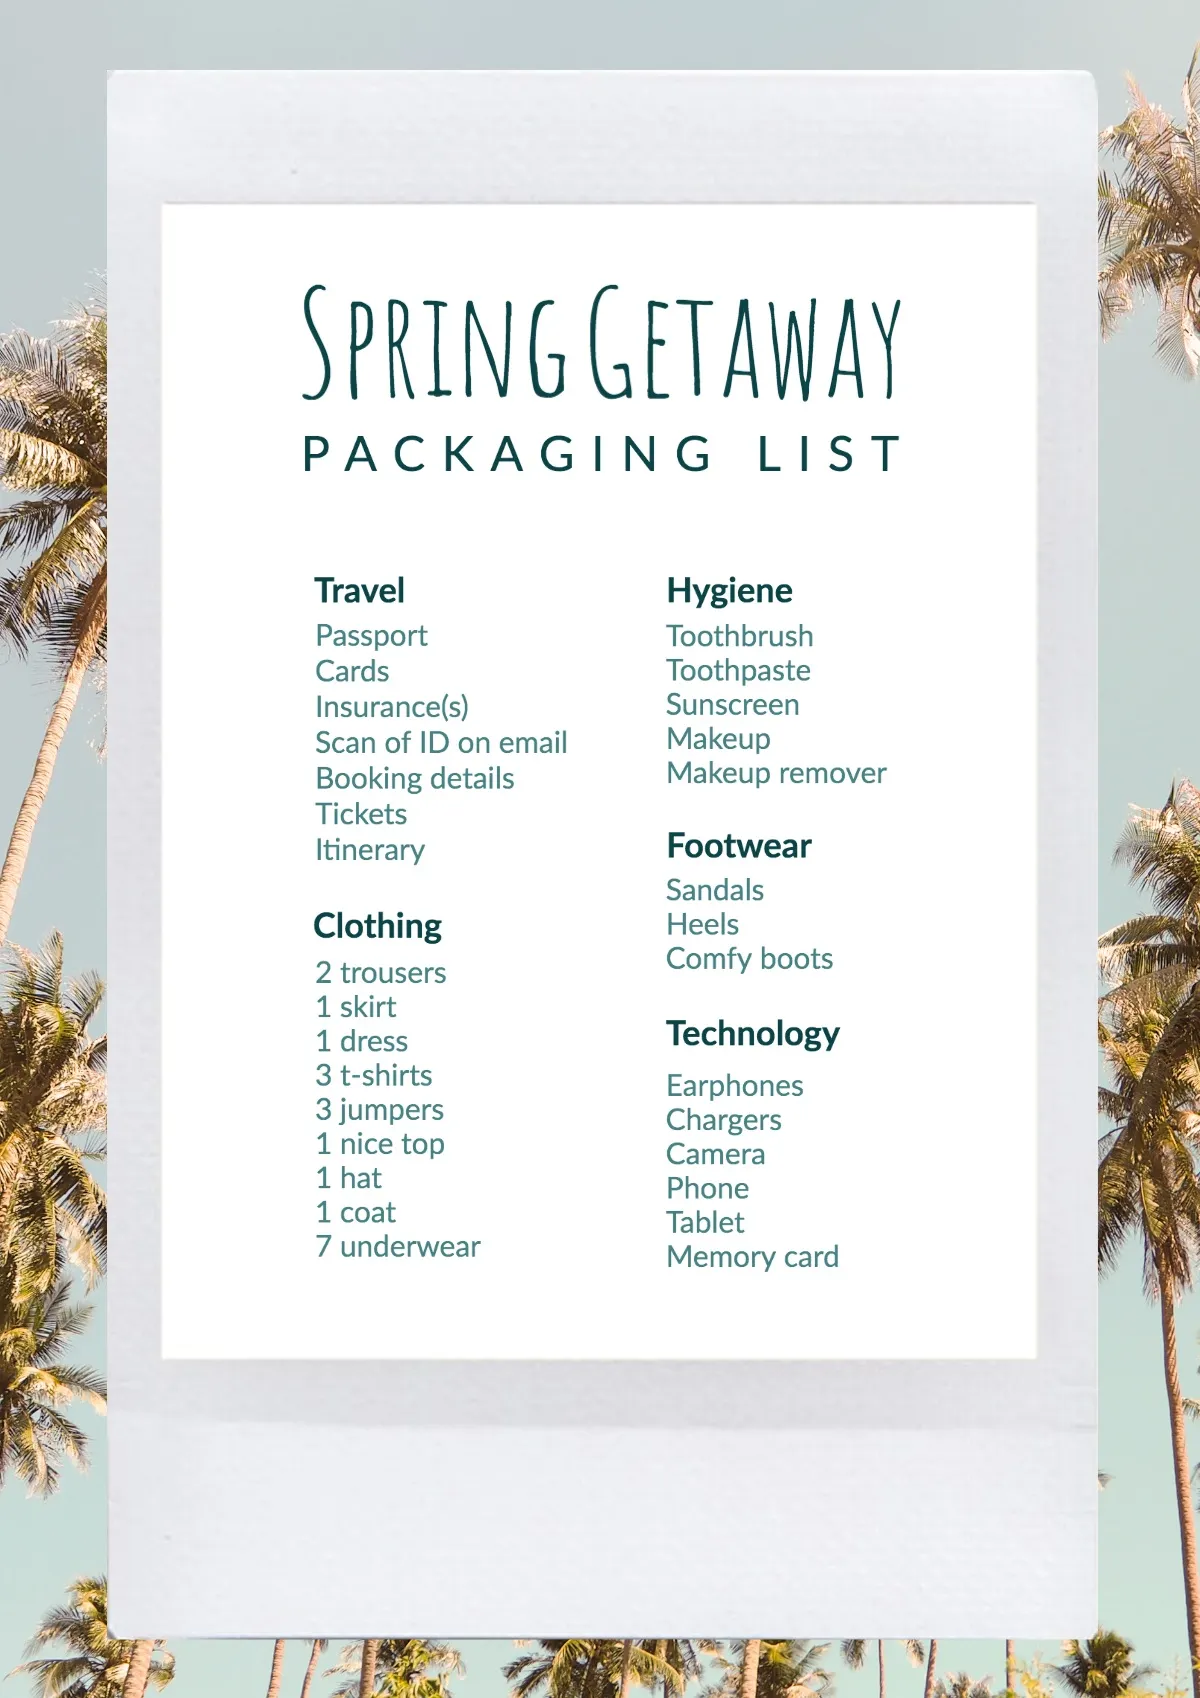 Spring getaway packaging list